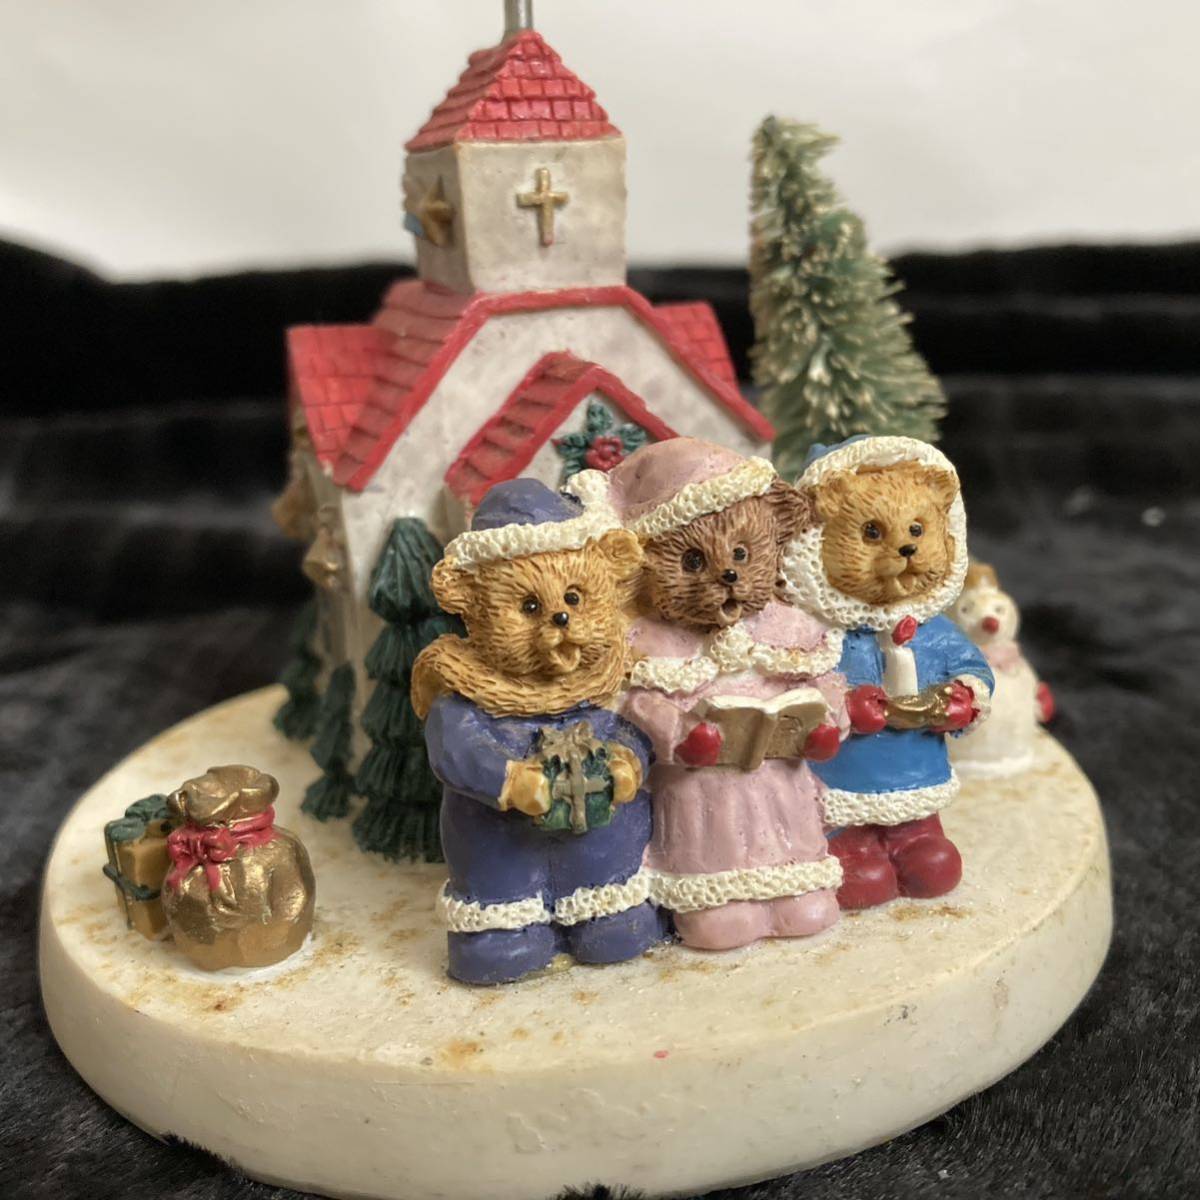 サンタクロース 熊 キャンドル型置き物 3点まとめて 飾り クリスマスシーズンインテリア 人形_画像6